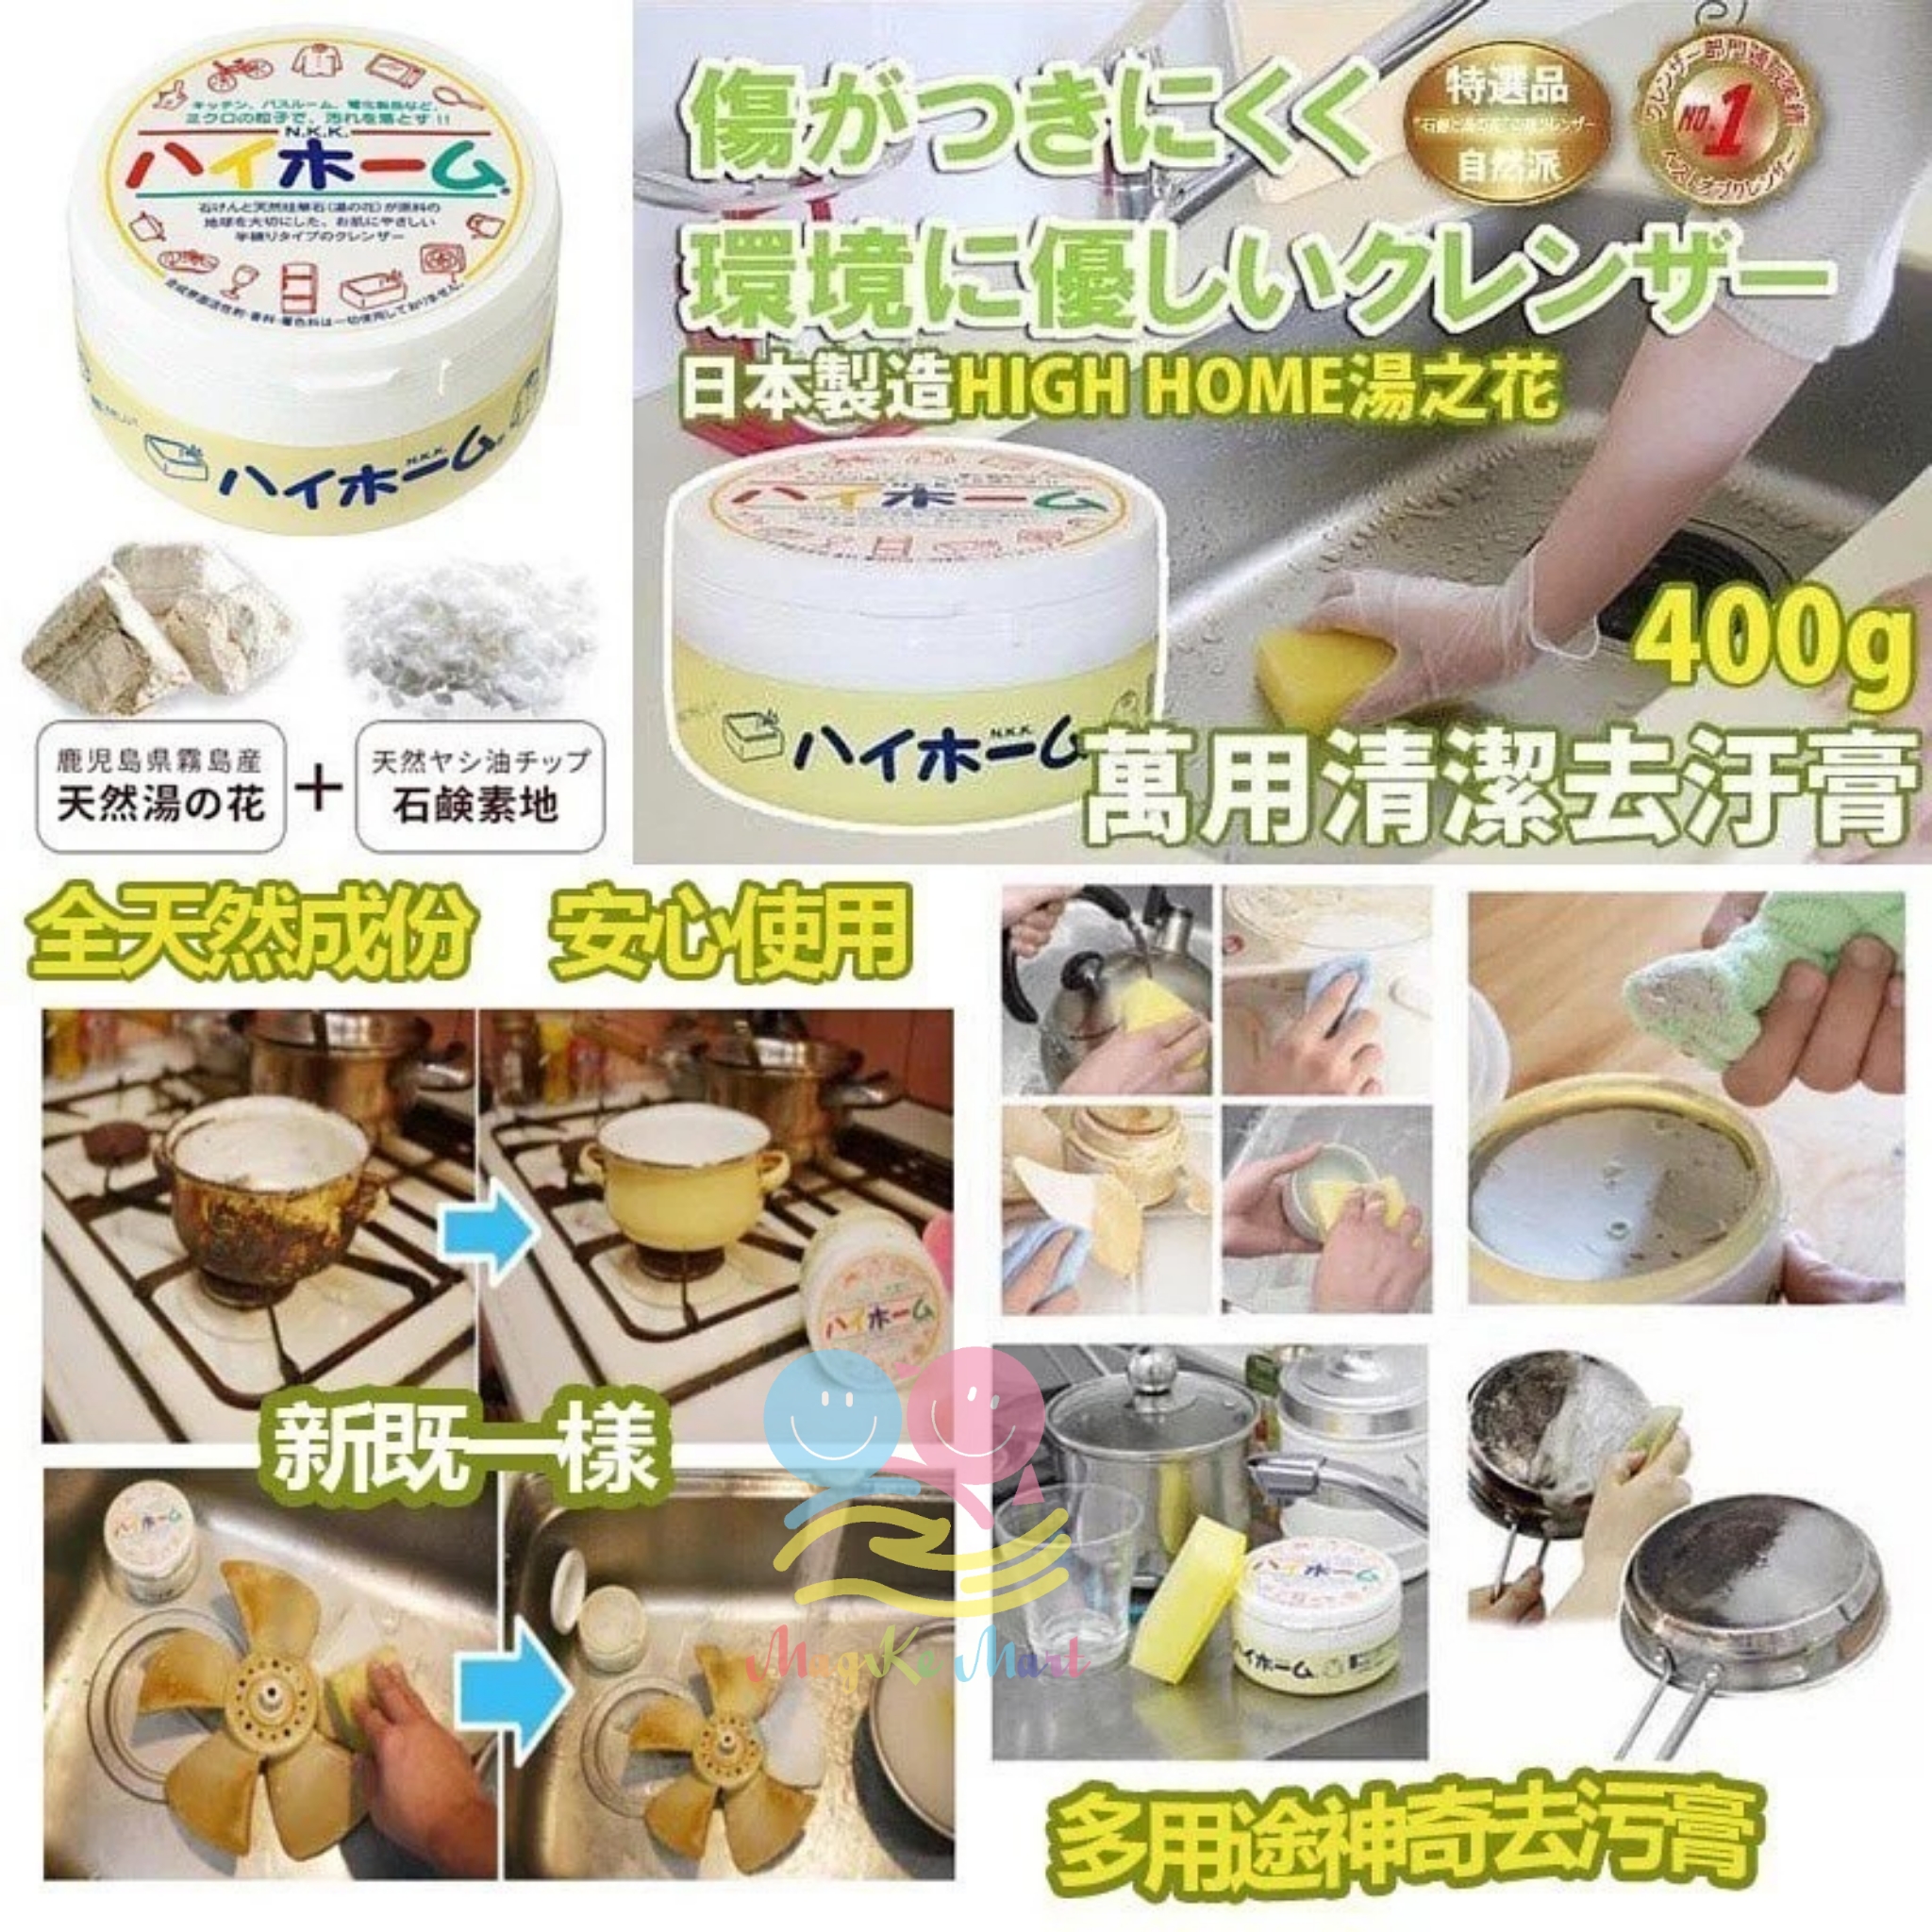 日本 High Home 湯之花萬用清潔去污膏 400g